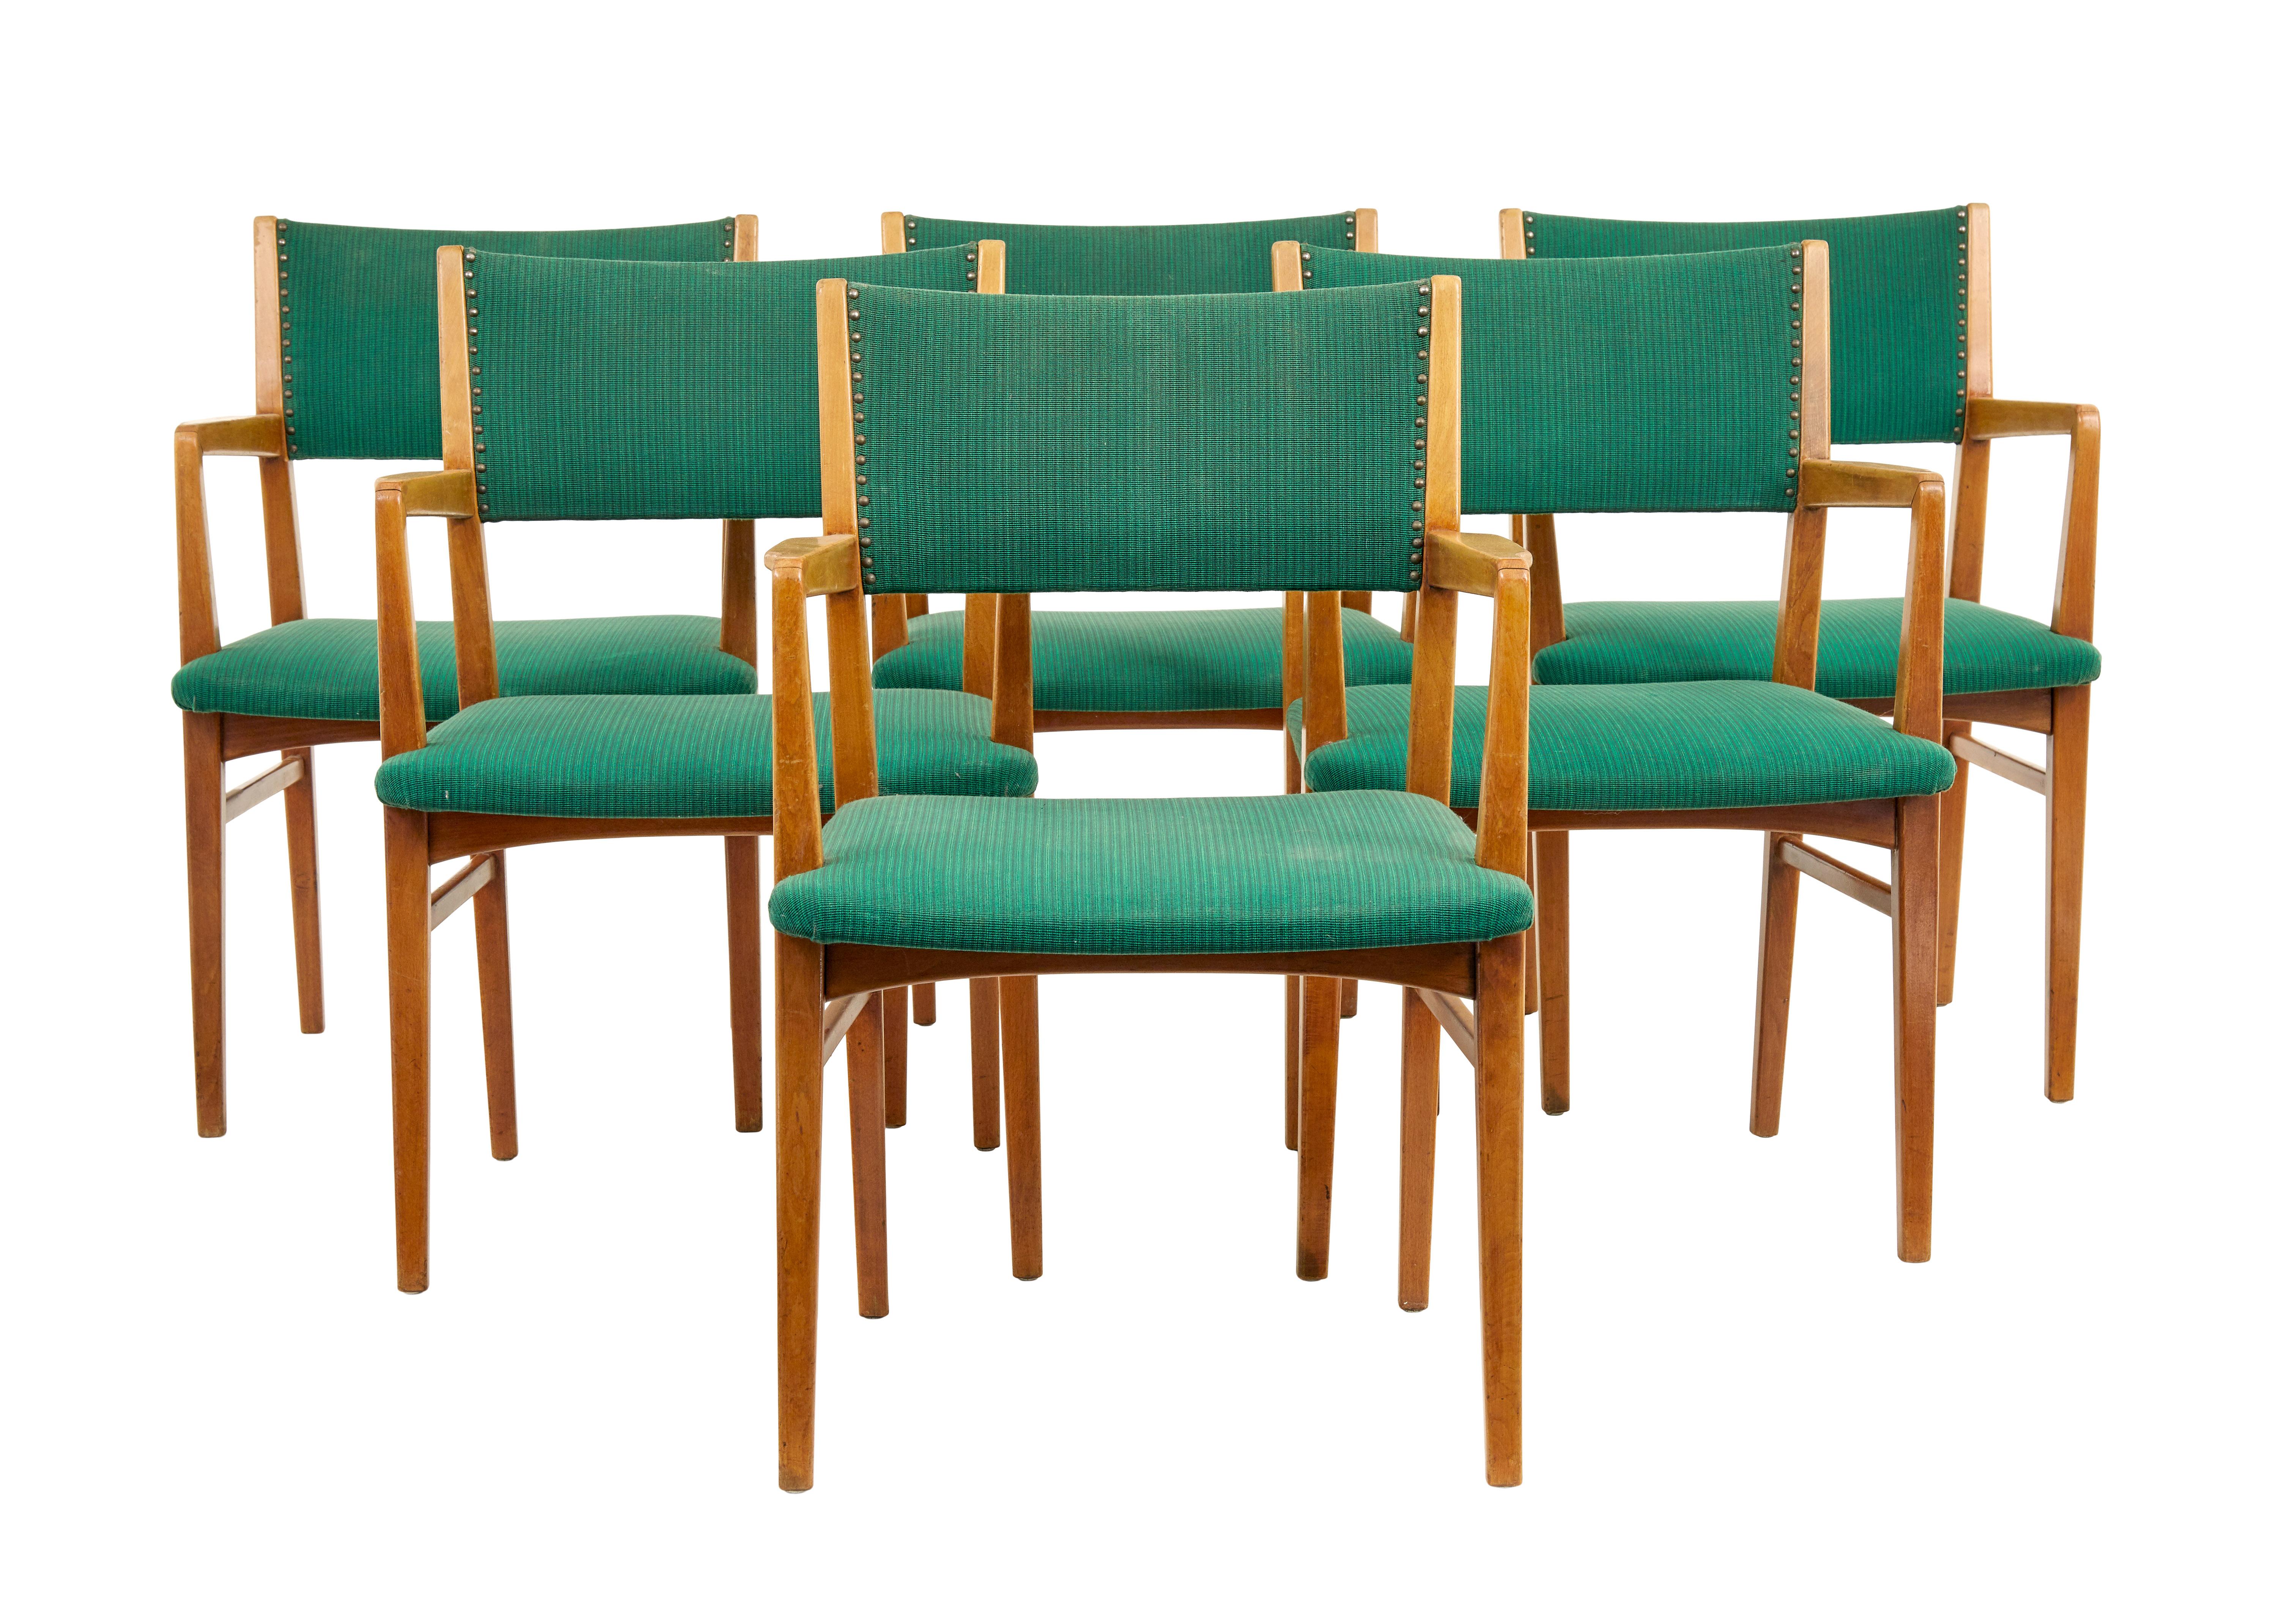 Ensemble de 6 fauteuils scandinaves du milieu du 20e siècle, vers 1960.

Ensemble de chaises de bureau suédoises de bonne qualité qui pourraient maintenant servir de chaises de salle à manger.  Très confortable et fabriqué en hêtre massif. 